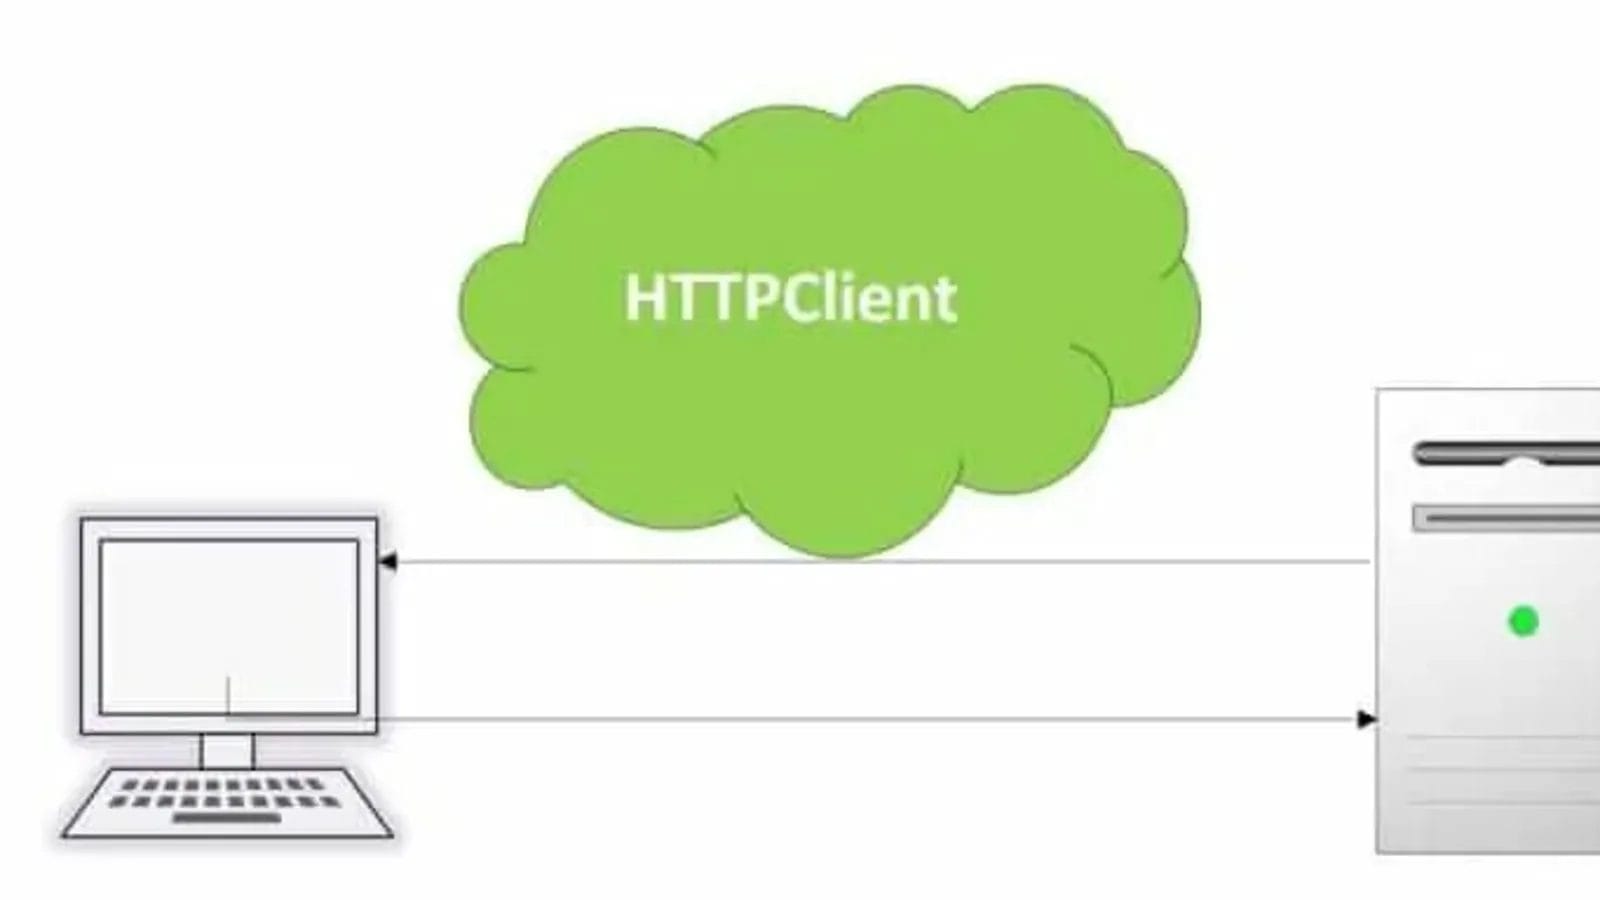 HTTPClient